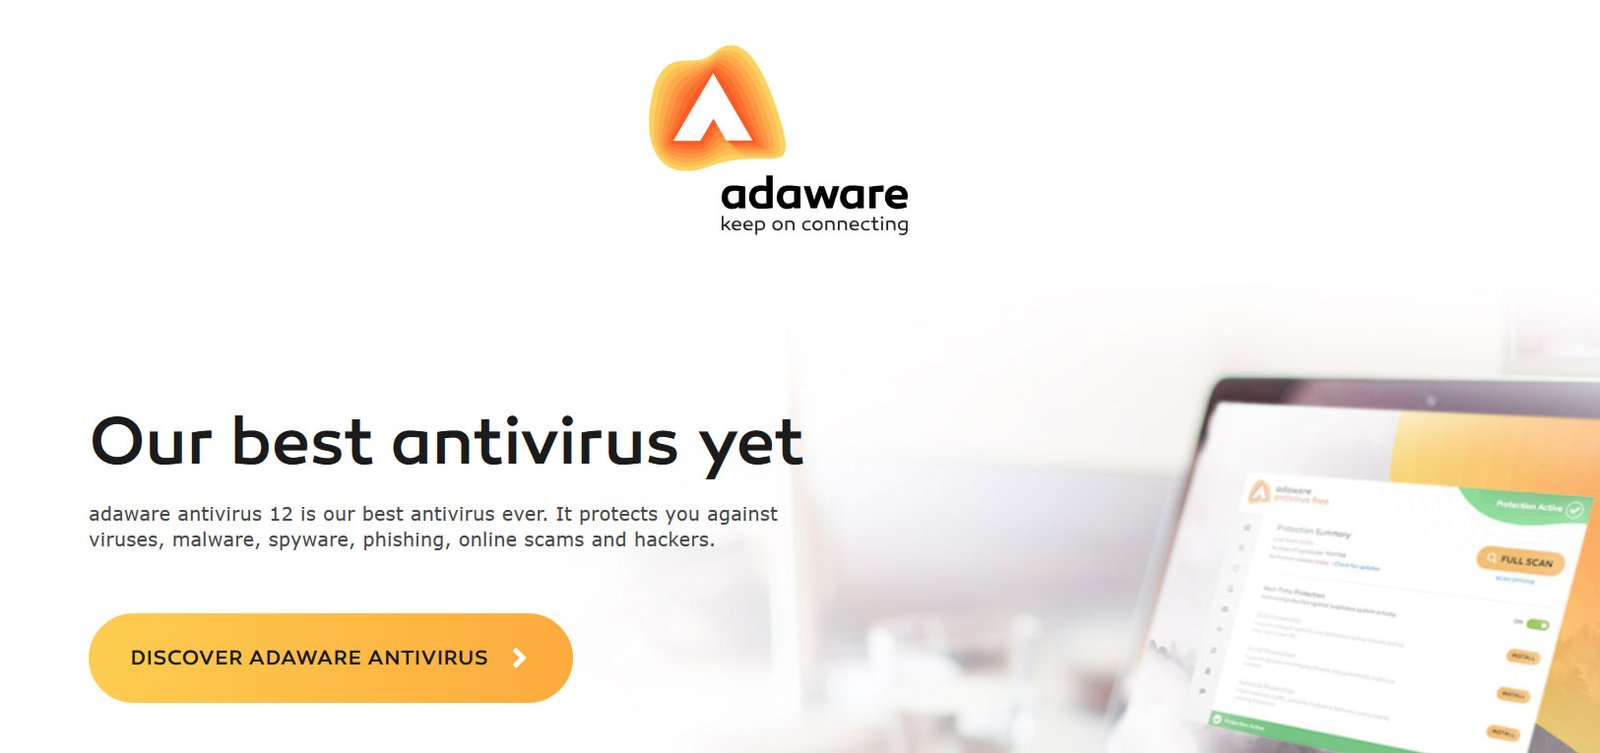 adaware antivirus free download 2019